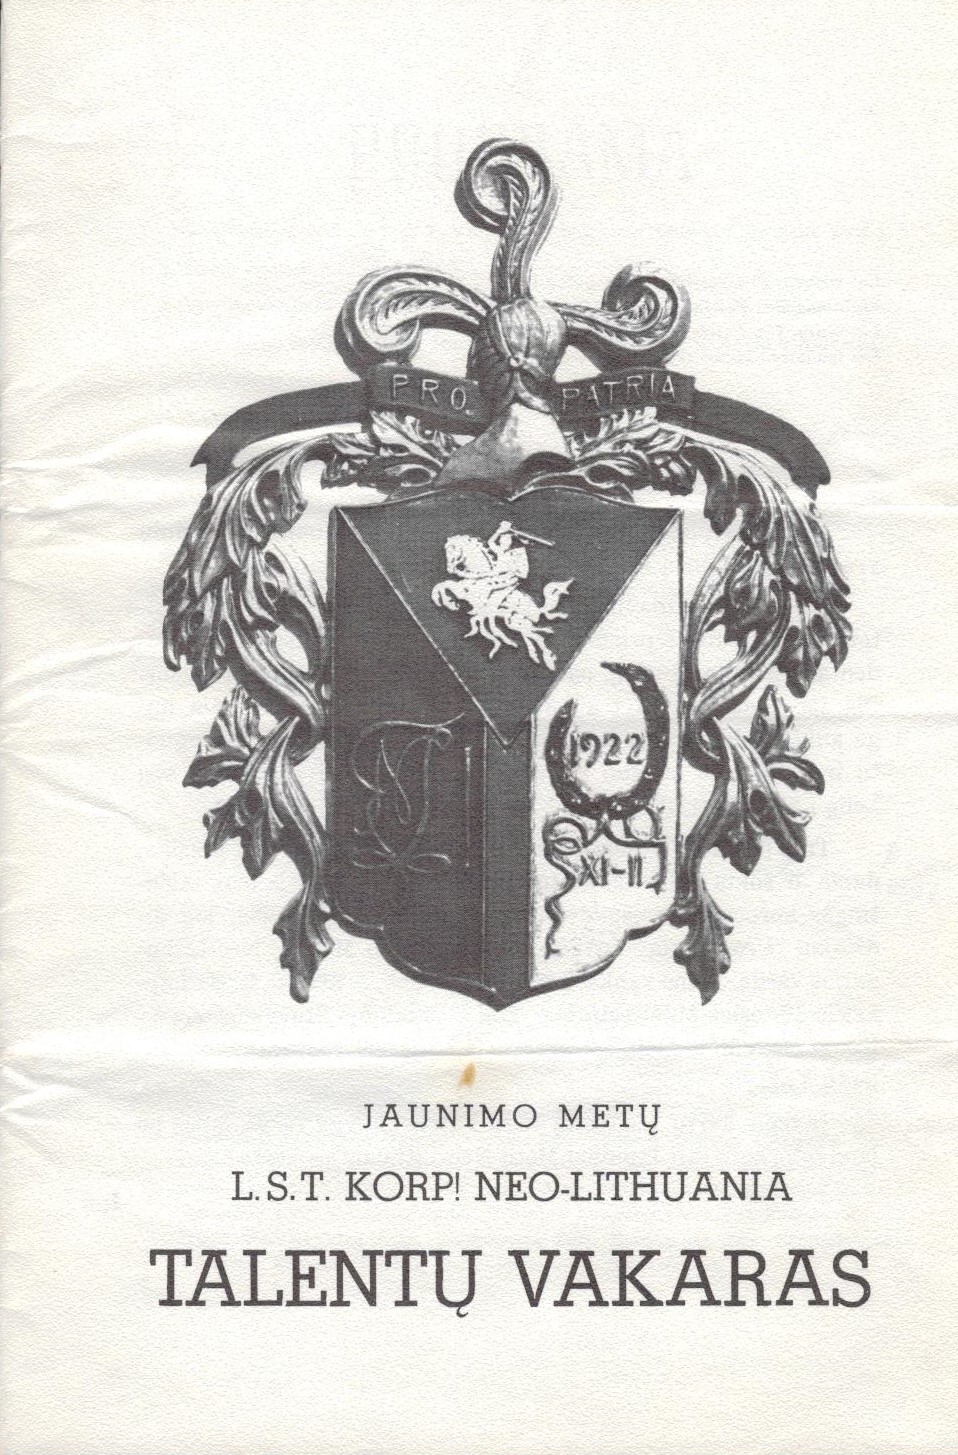 Lietuvos studentų tautininkų korporacijos Neo-Lithuania talentų vakaro bukletas. Čikaga. 1966 m. MLLM 116307